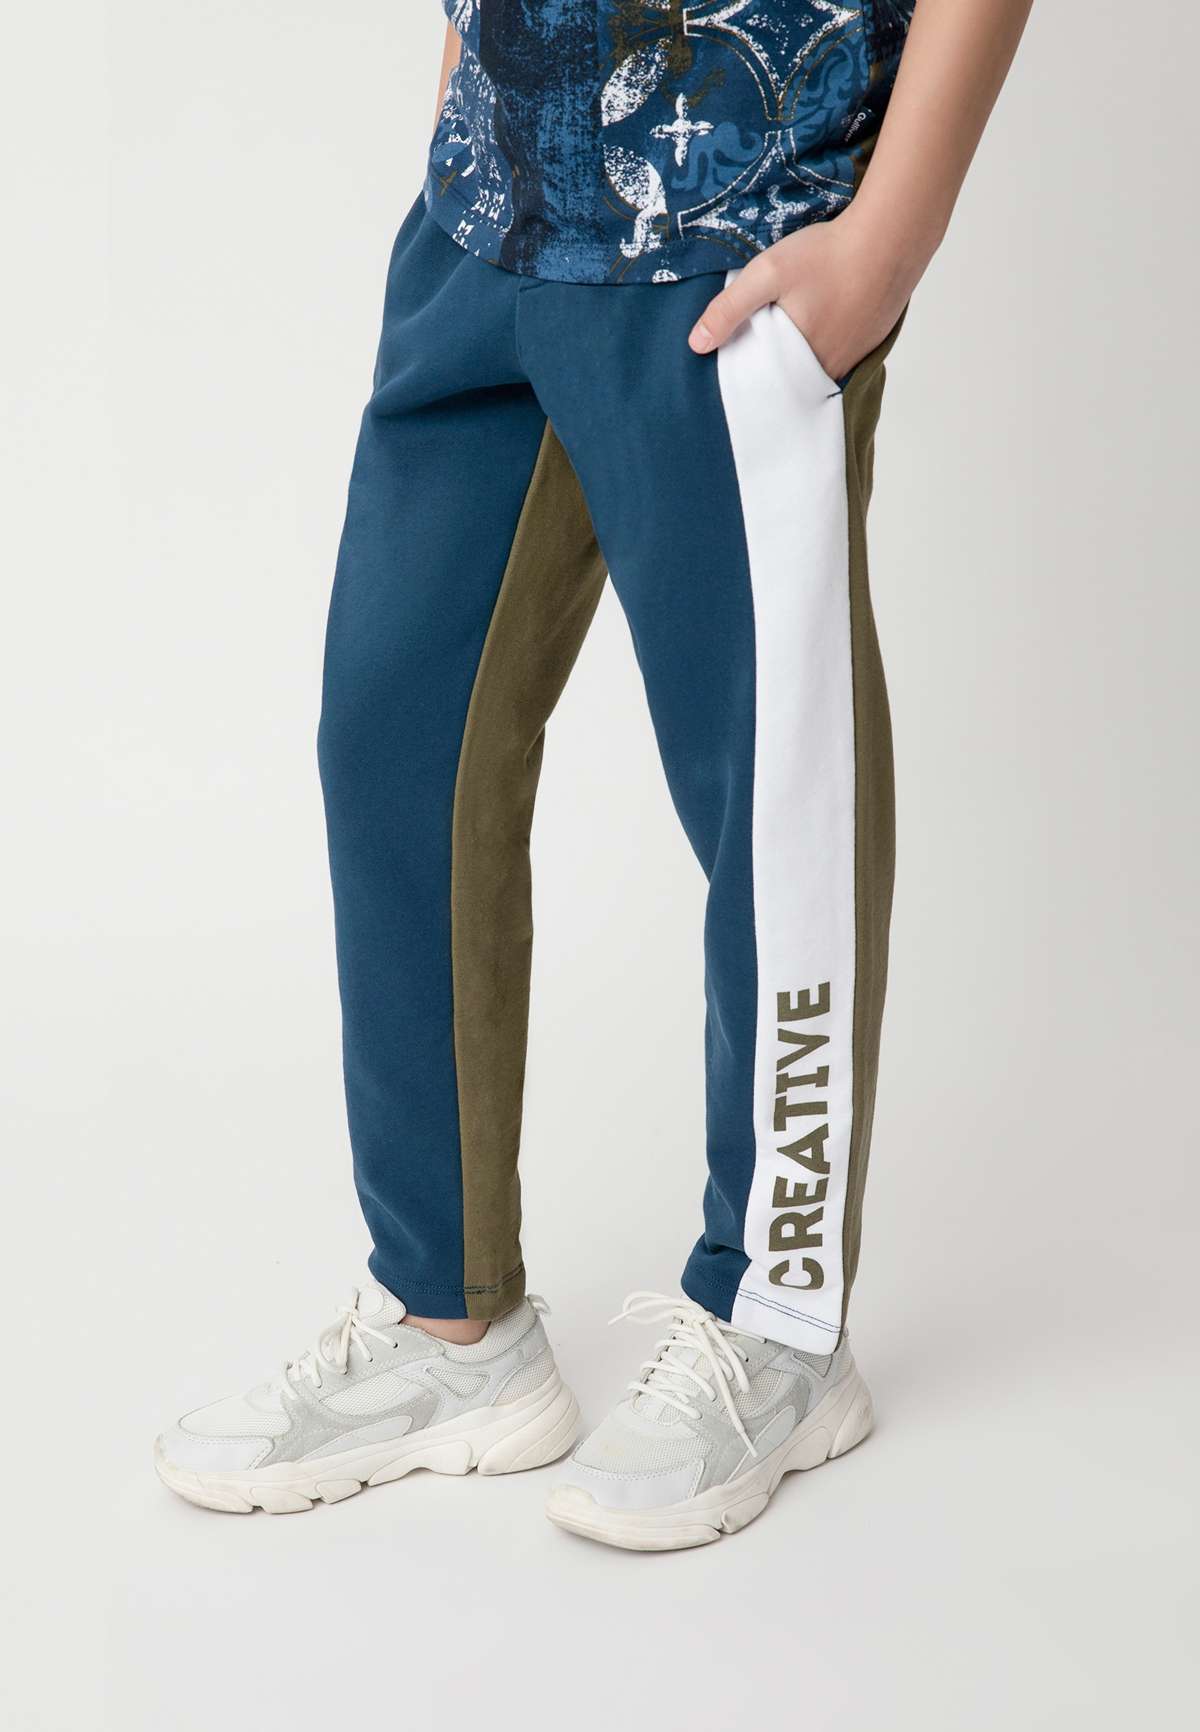 Спортивные брюки с регулируемым поясом Gulliver синий-зеленый (Европейские  размеры) цвет купить в магазине одежды JOYLY.RU с доставкой по России